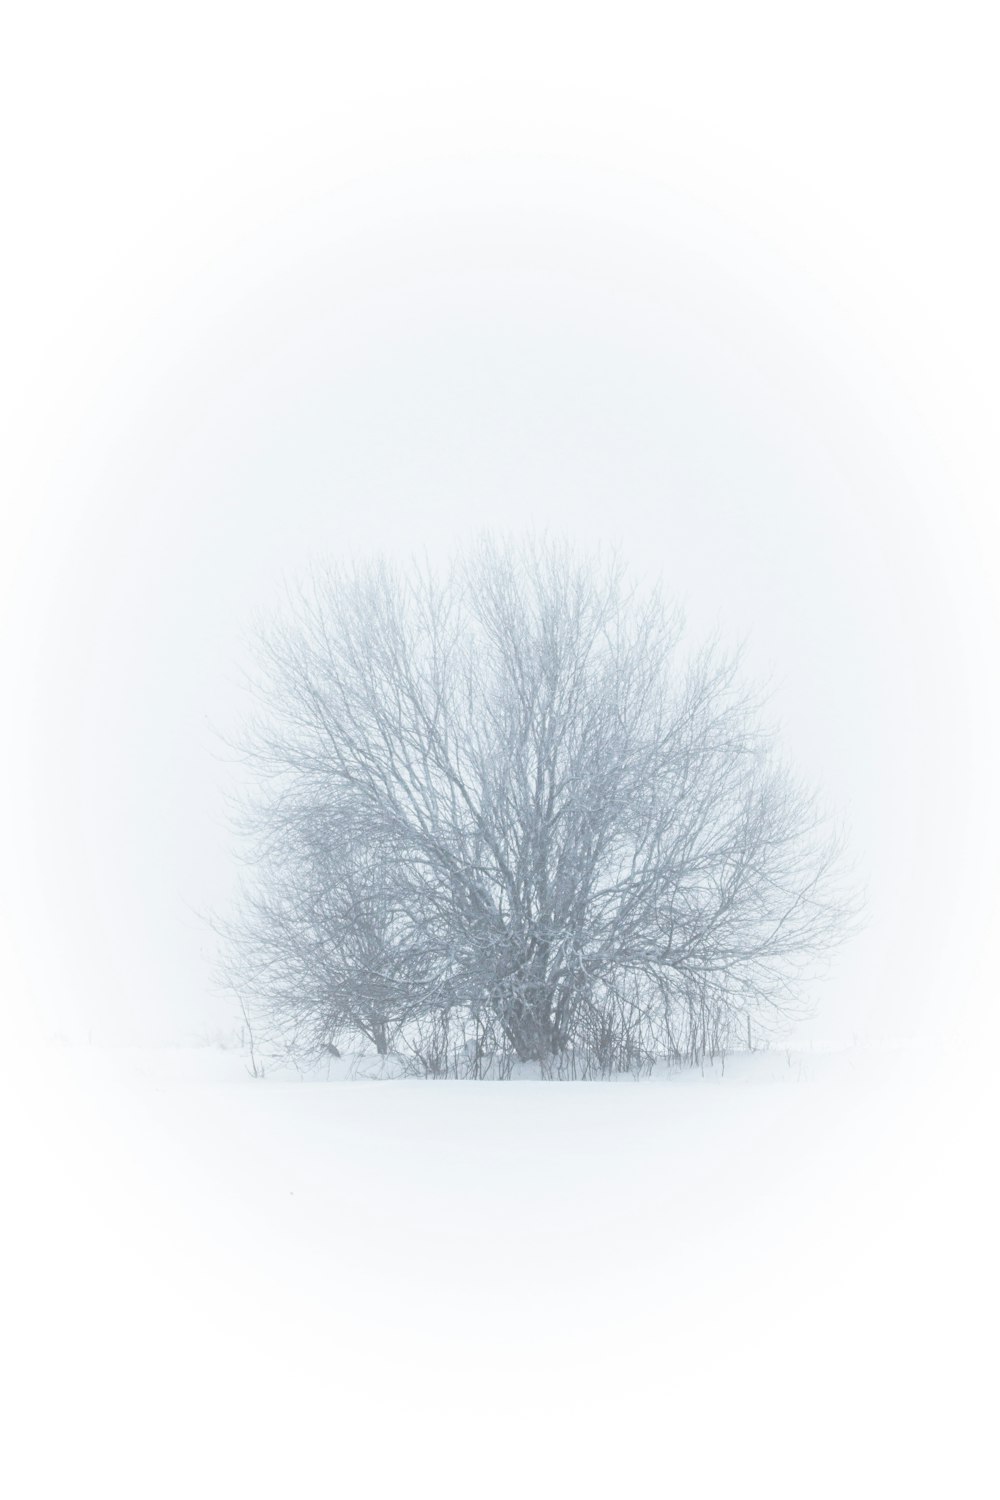 Un albero solitario in un campo innevato